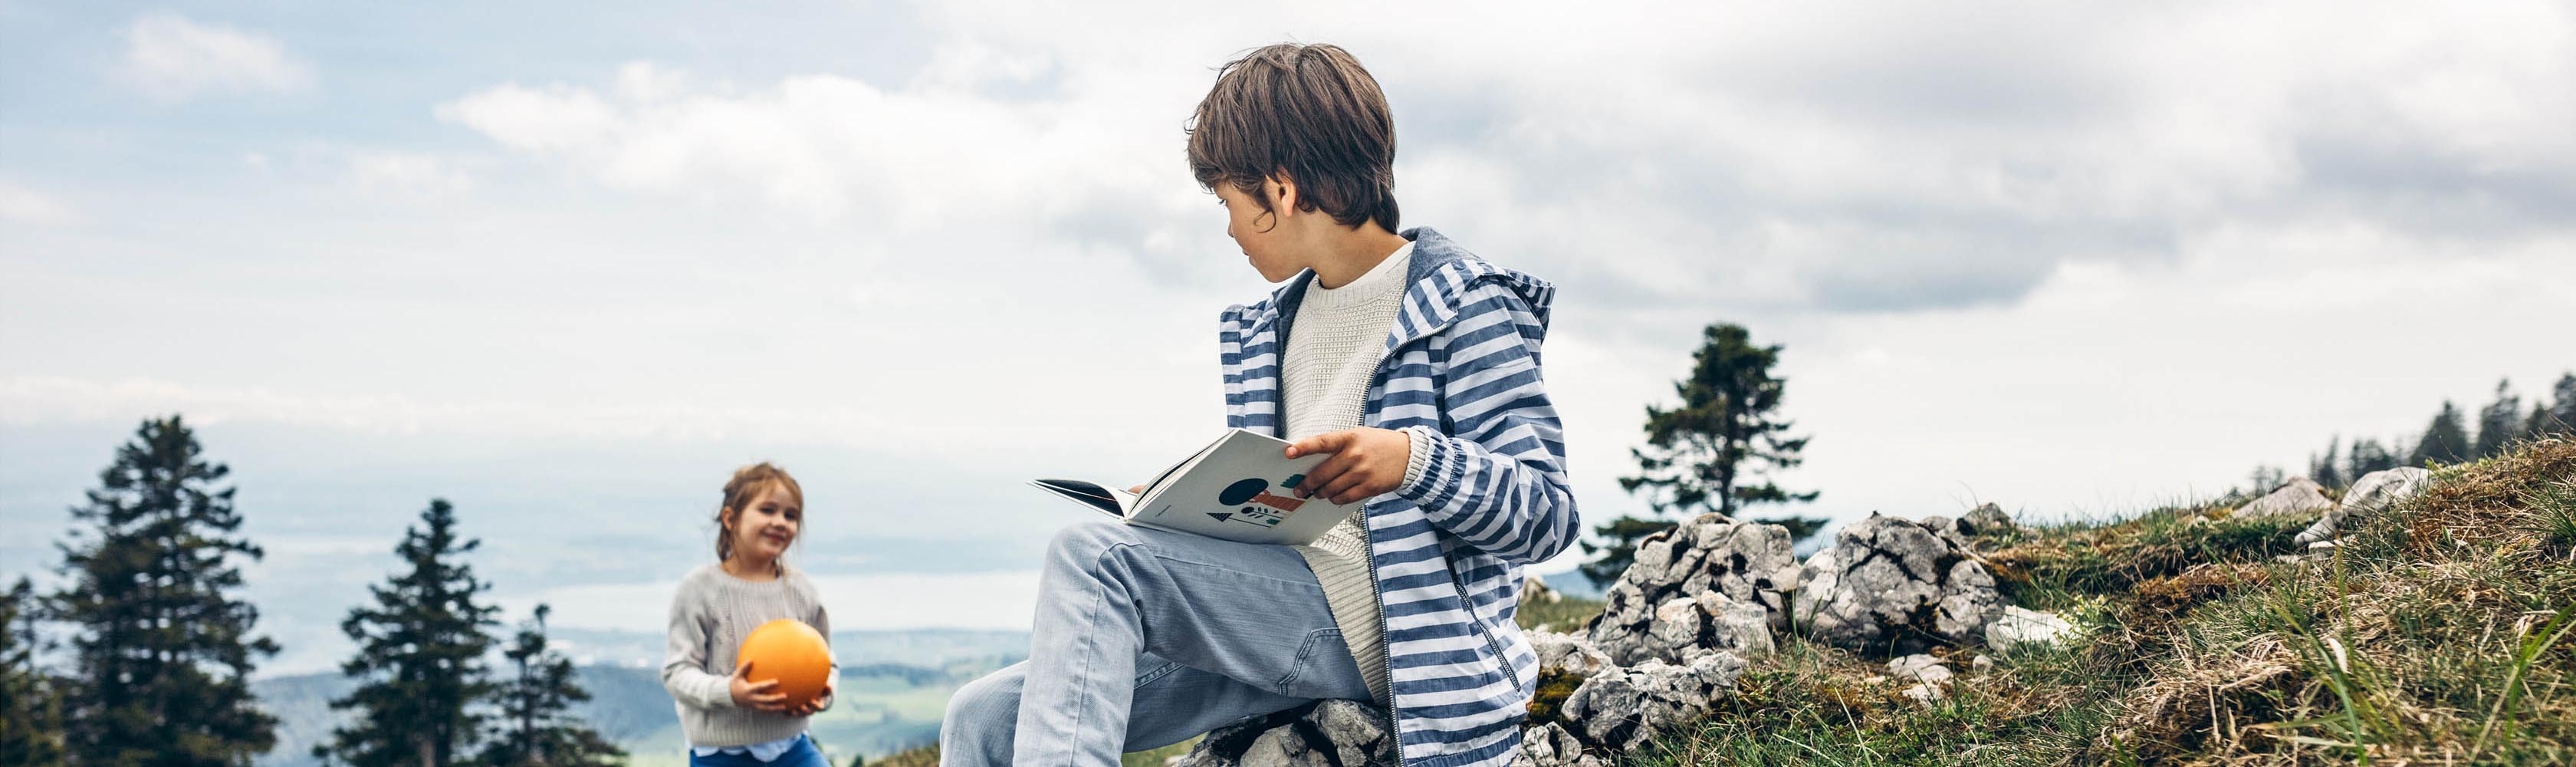 Un ragazzo è seduto su una pietra e sta leggendo un libro.